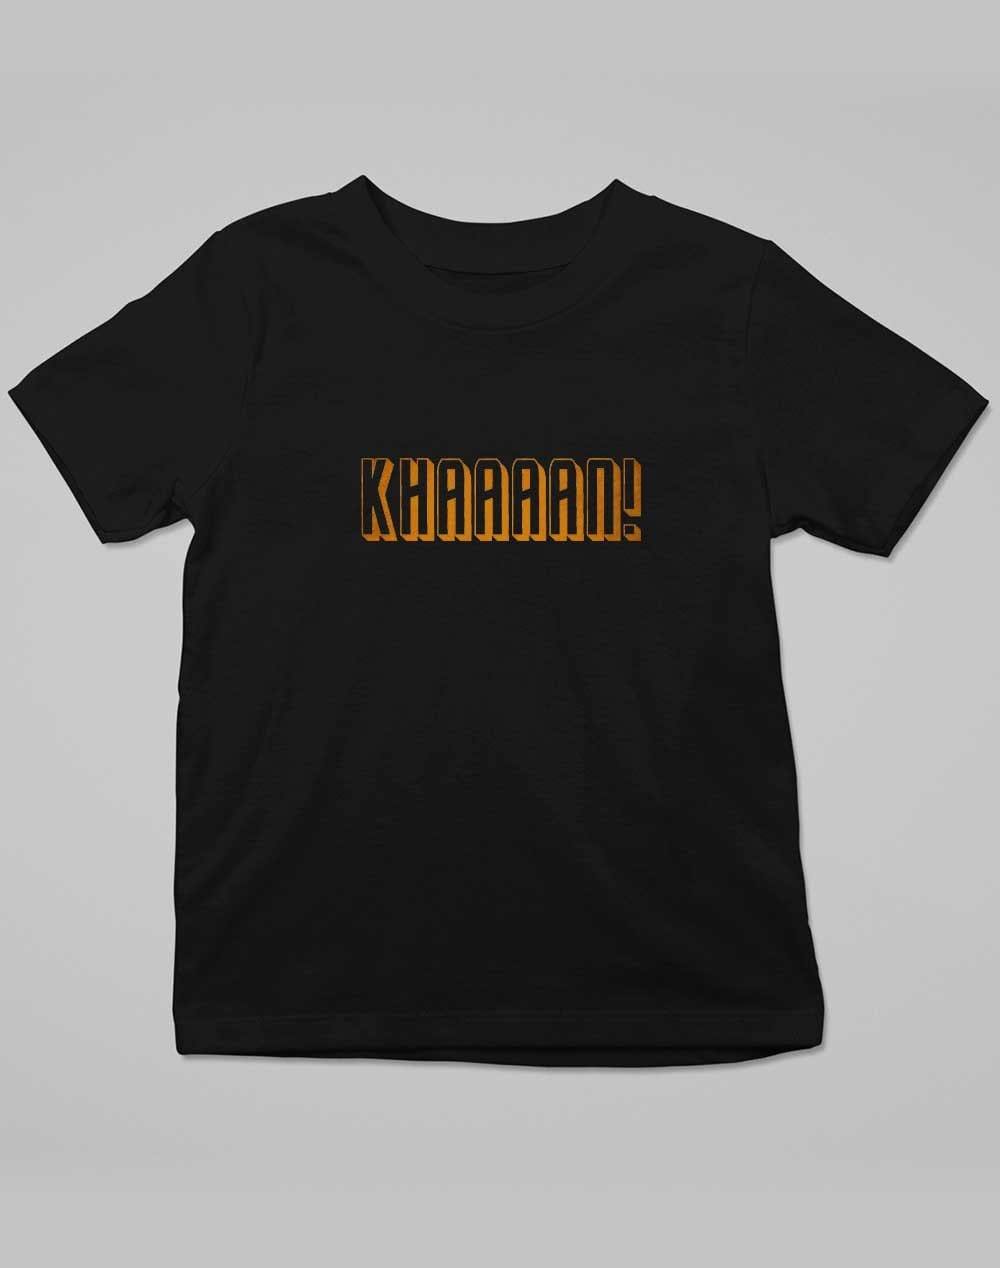 KHAAAAAN Kids T-Shirt 3-4 years / Deep Black  - Off World Tees